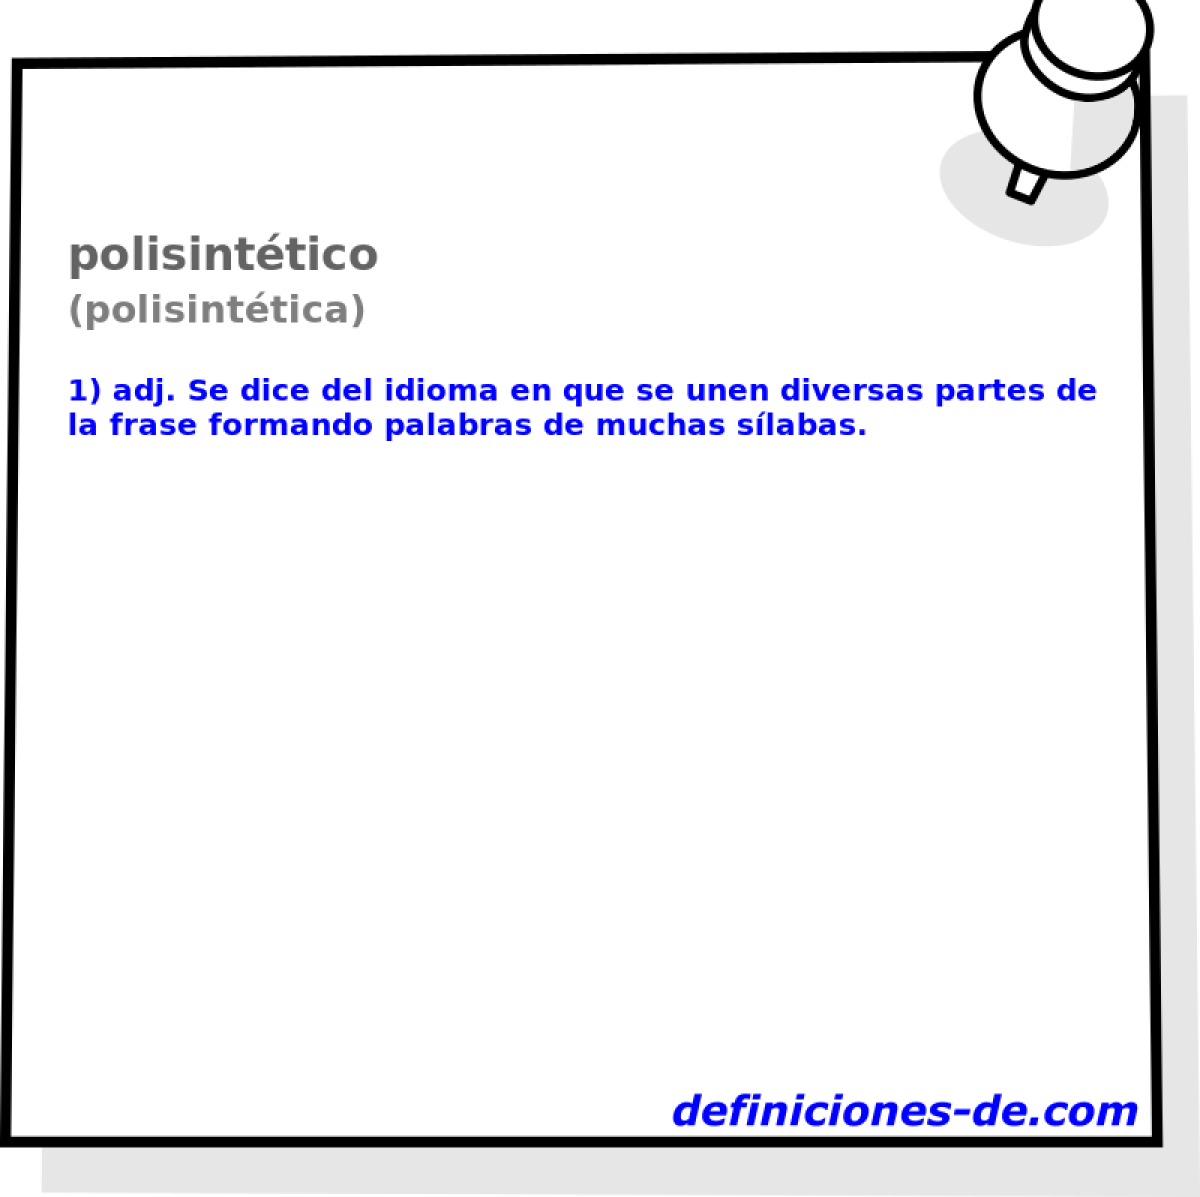 polisinttico (polisinttica)